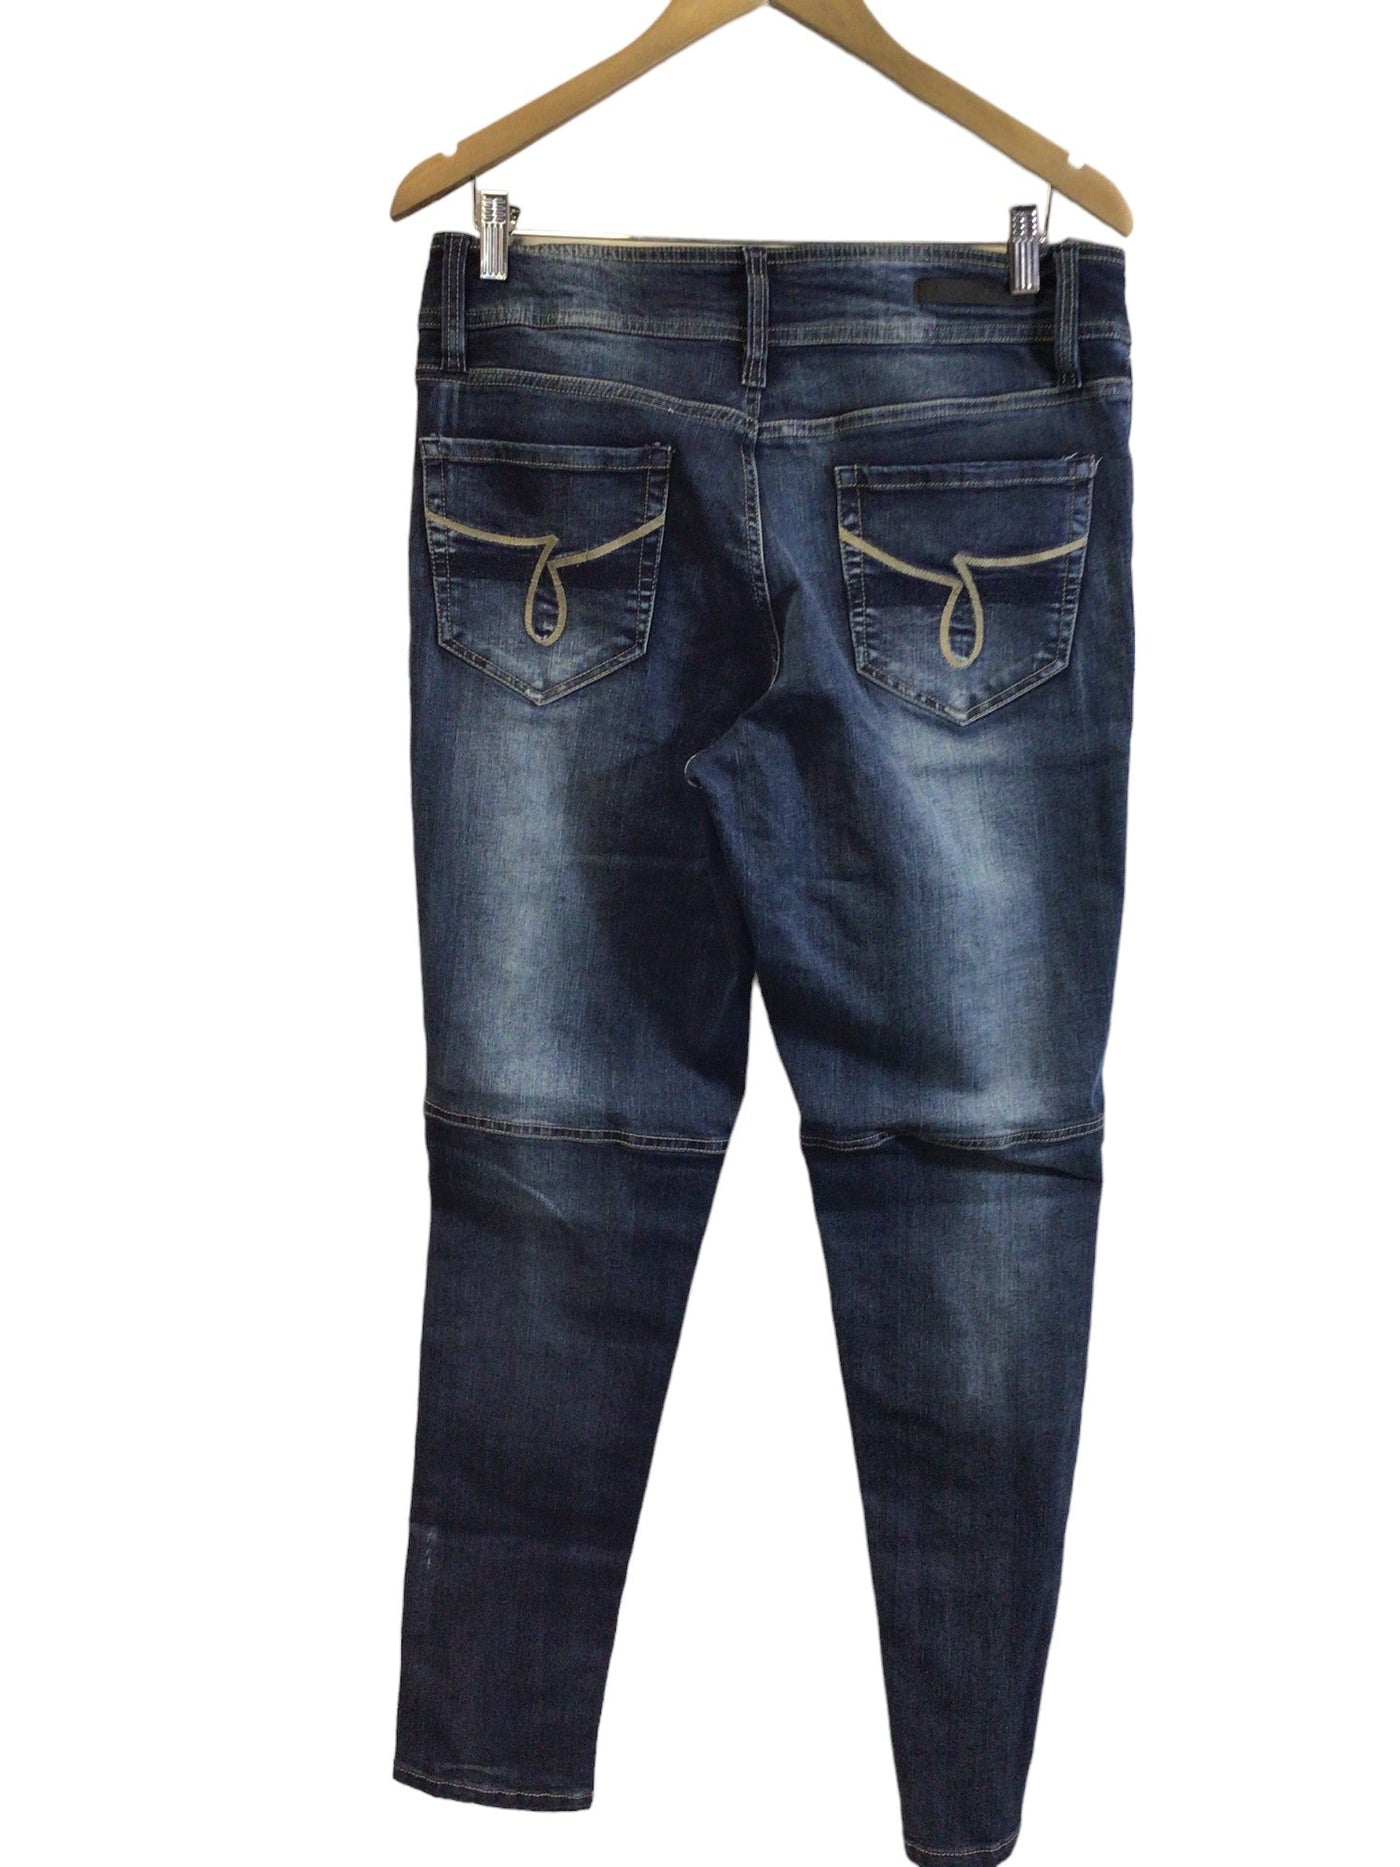 JEANIOLOGIE Women Straight-Legged Jeans Regular fit in Blue - Size 32 | 10.29 $ KOOP